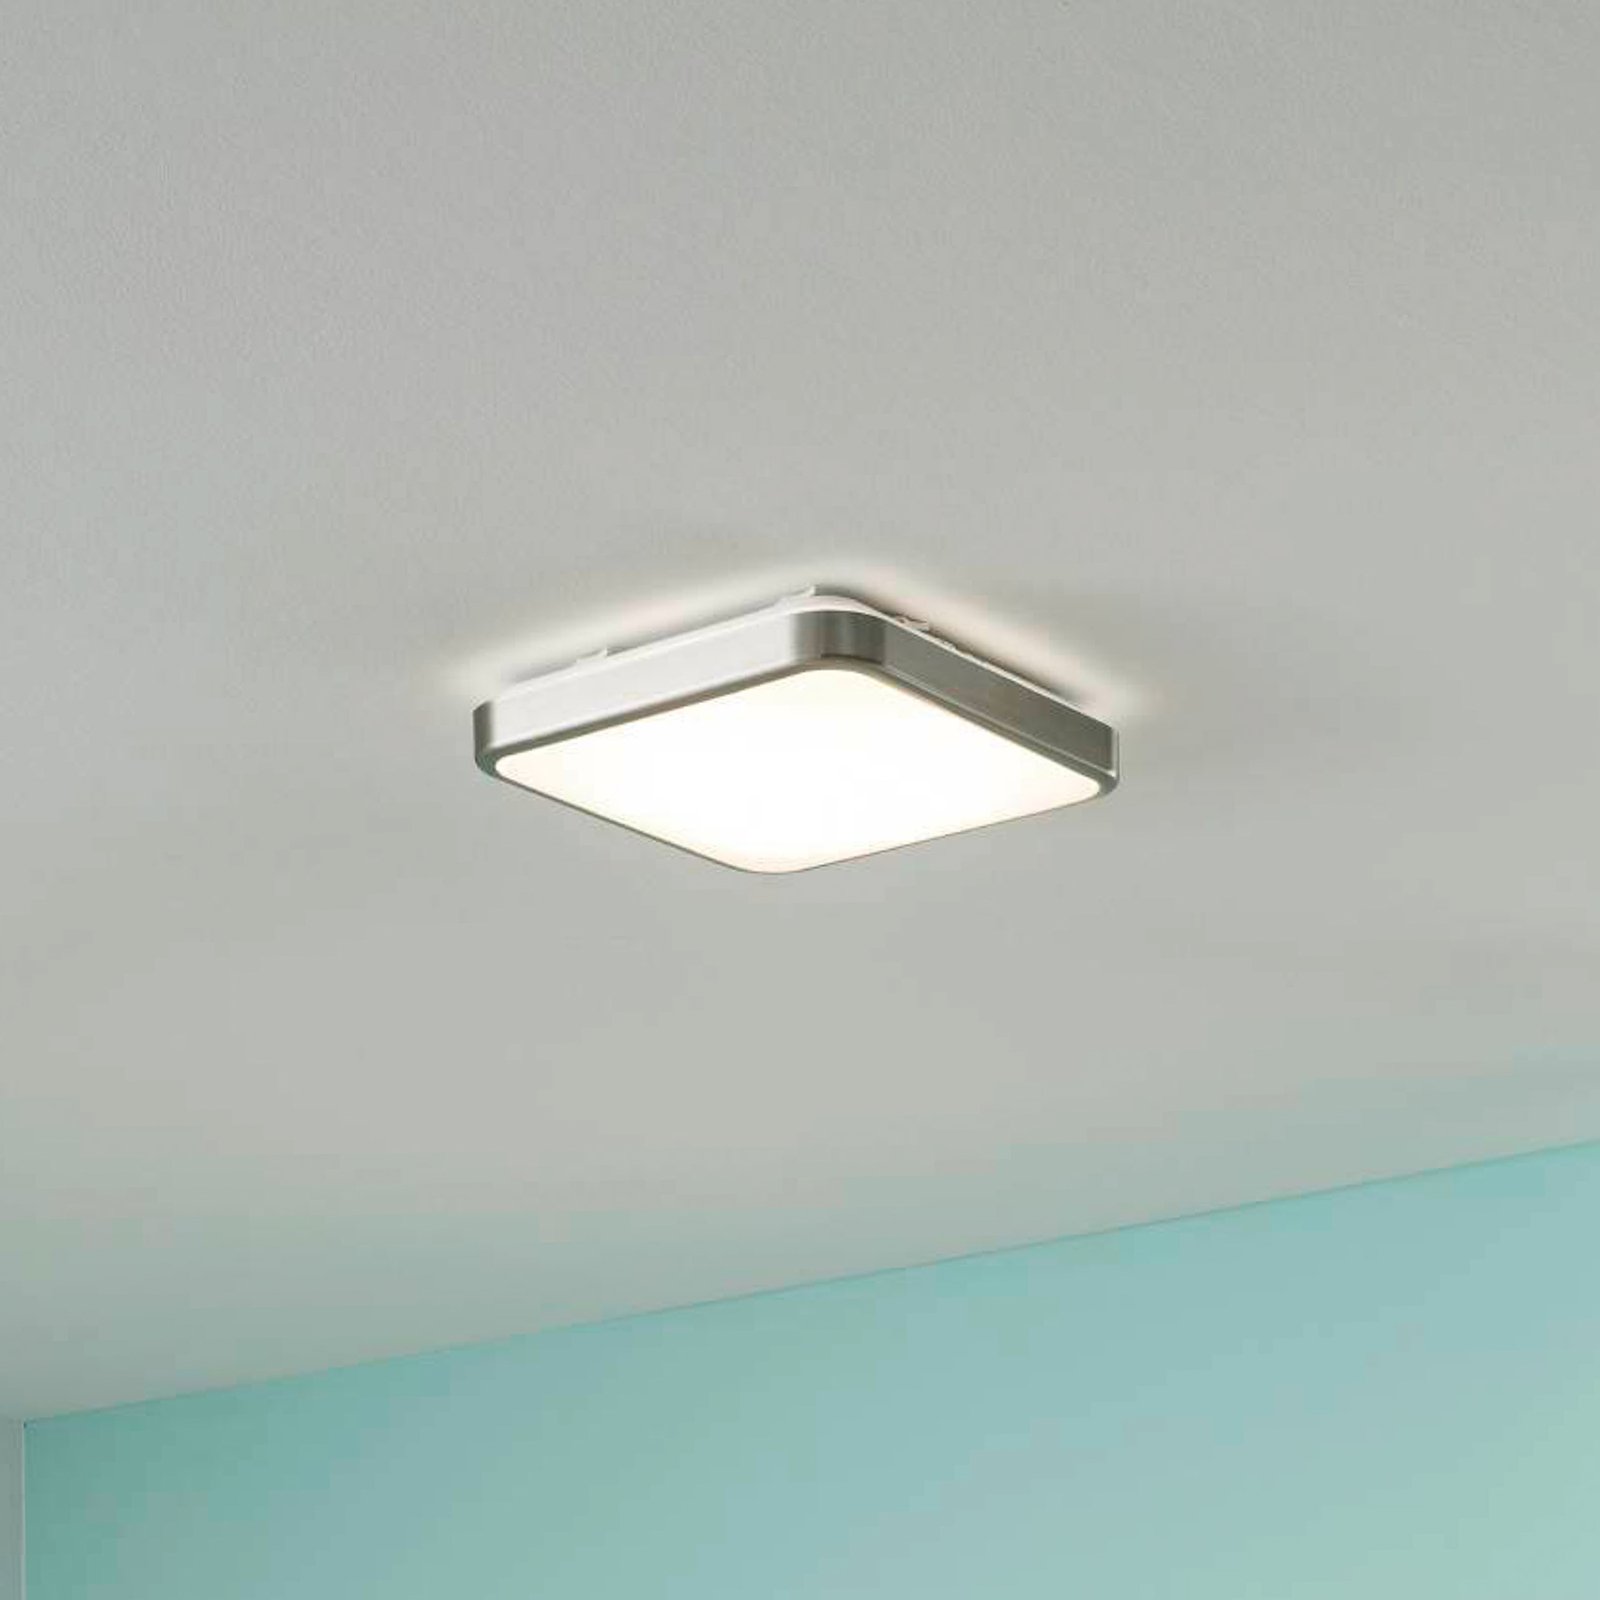 Manilva 1 LED ceiling light, IP44, matt nickel